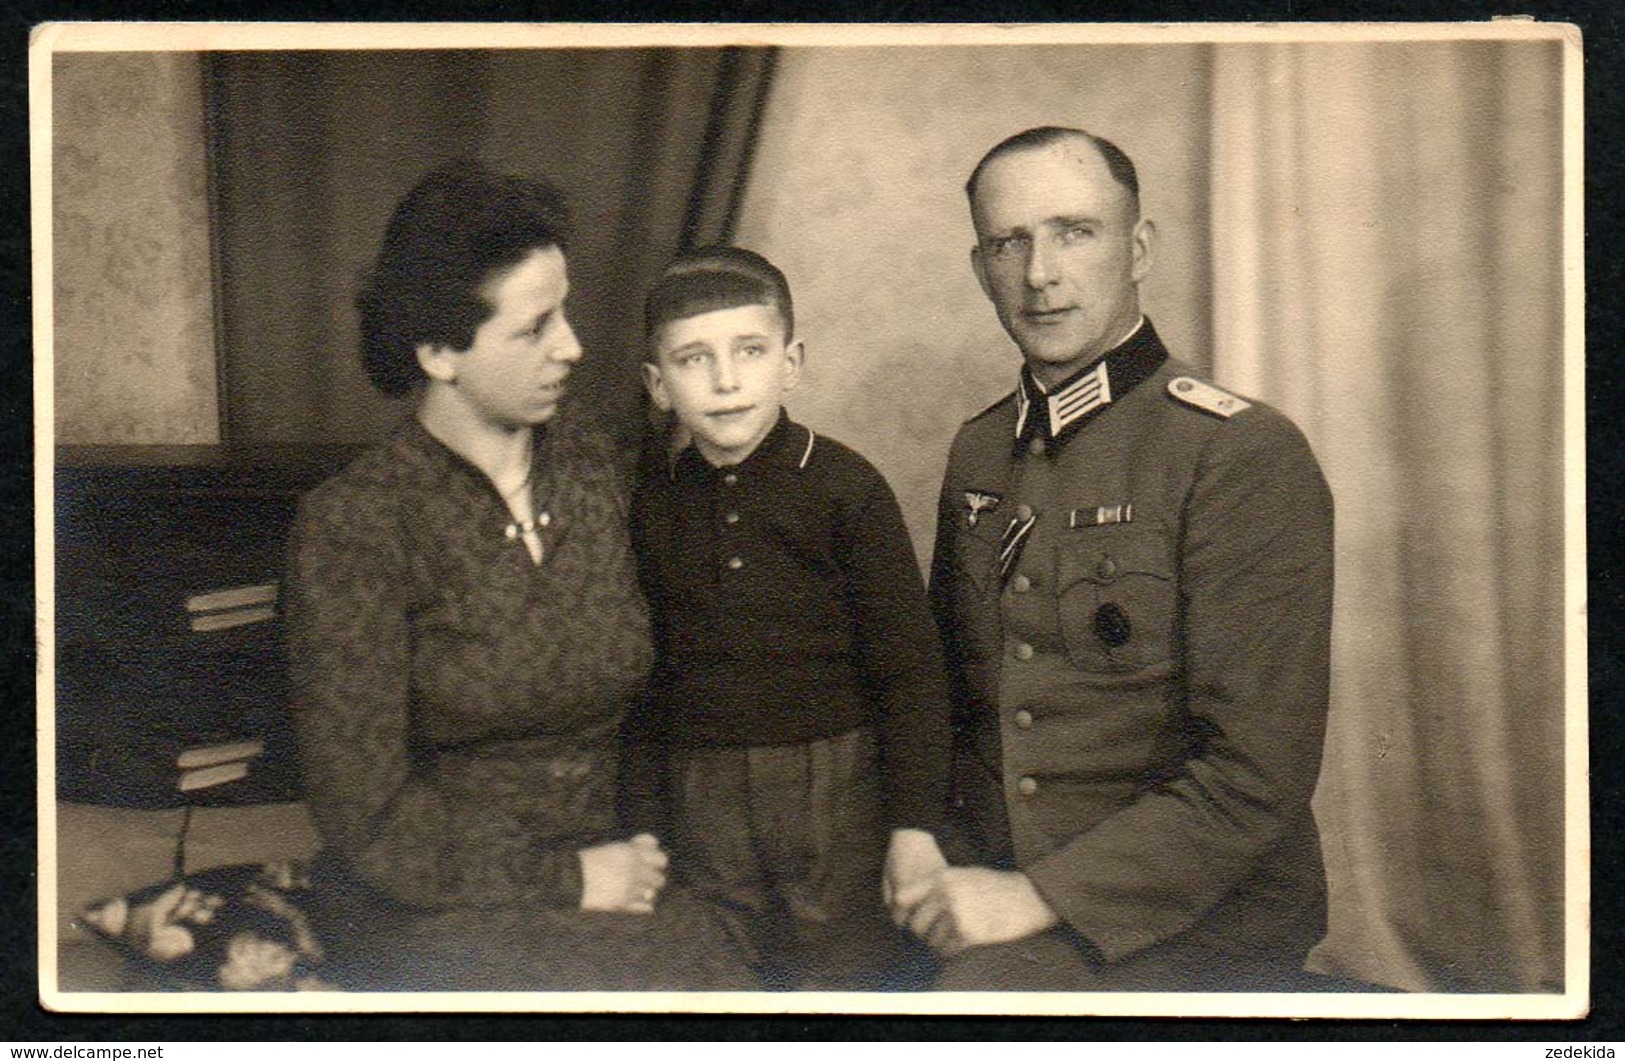 A4086 - Foto - Offizier Uniform Abzeichen Orden- 2. WK WW - Weltkrieg 1939-45